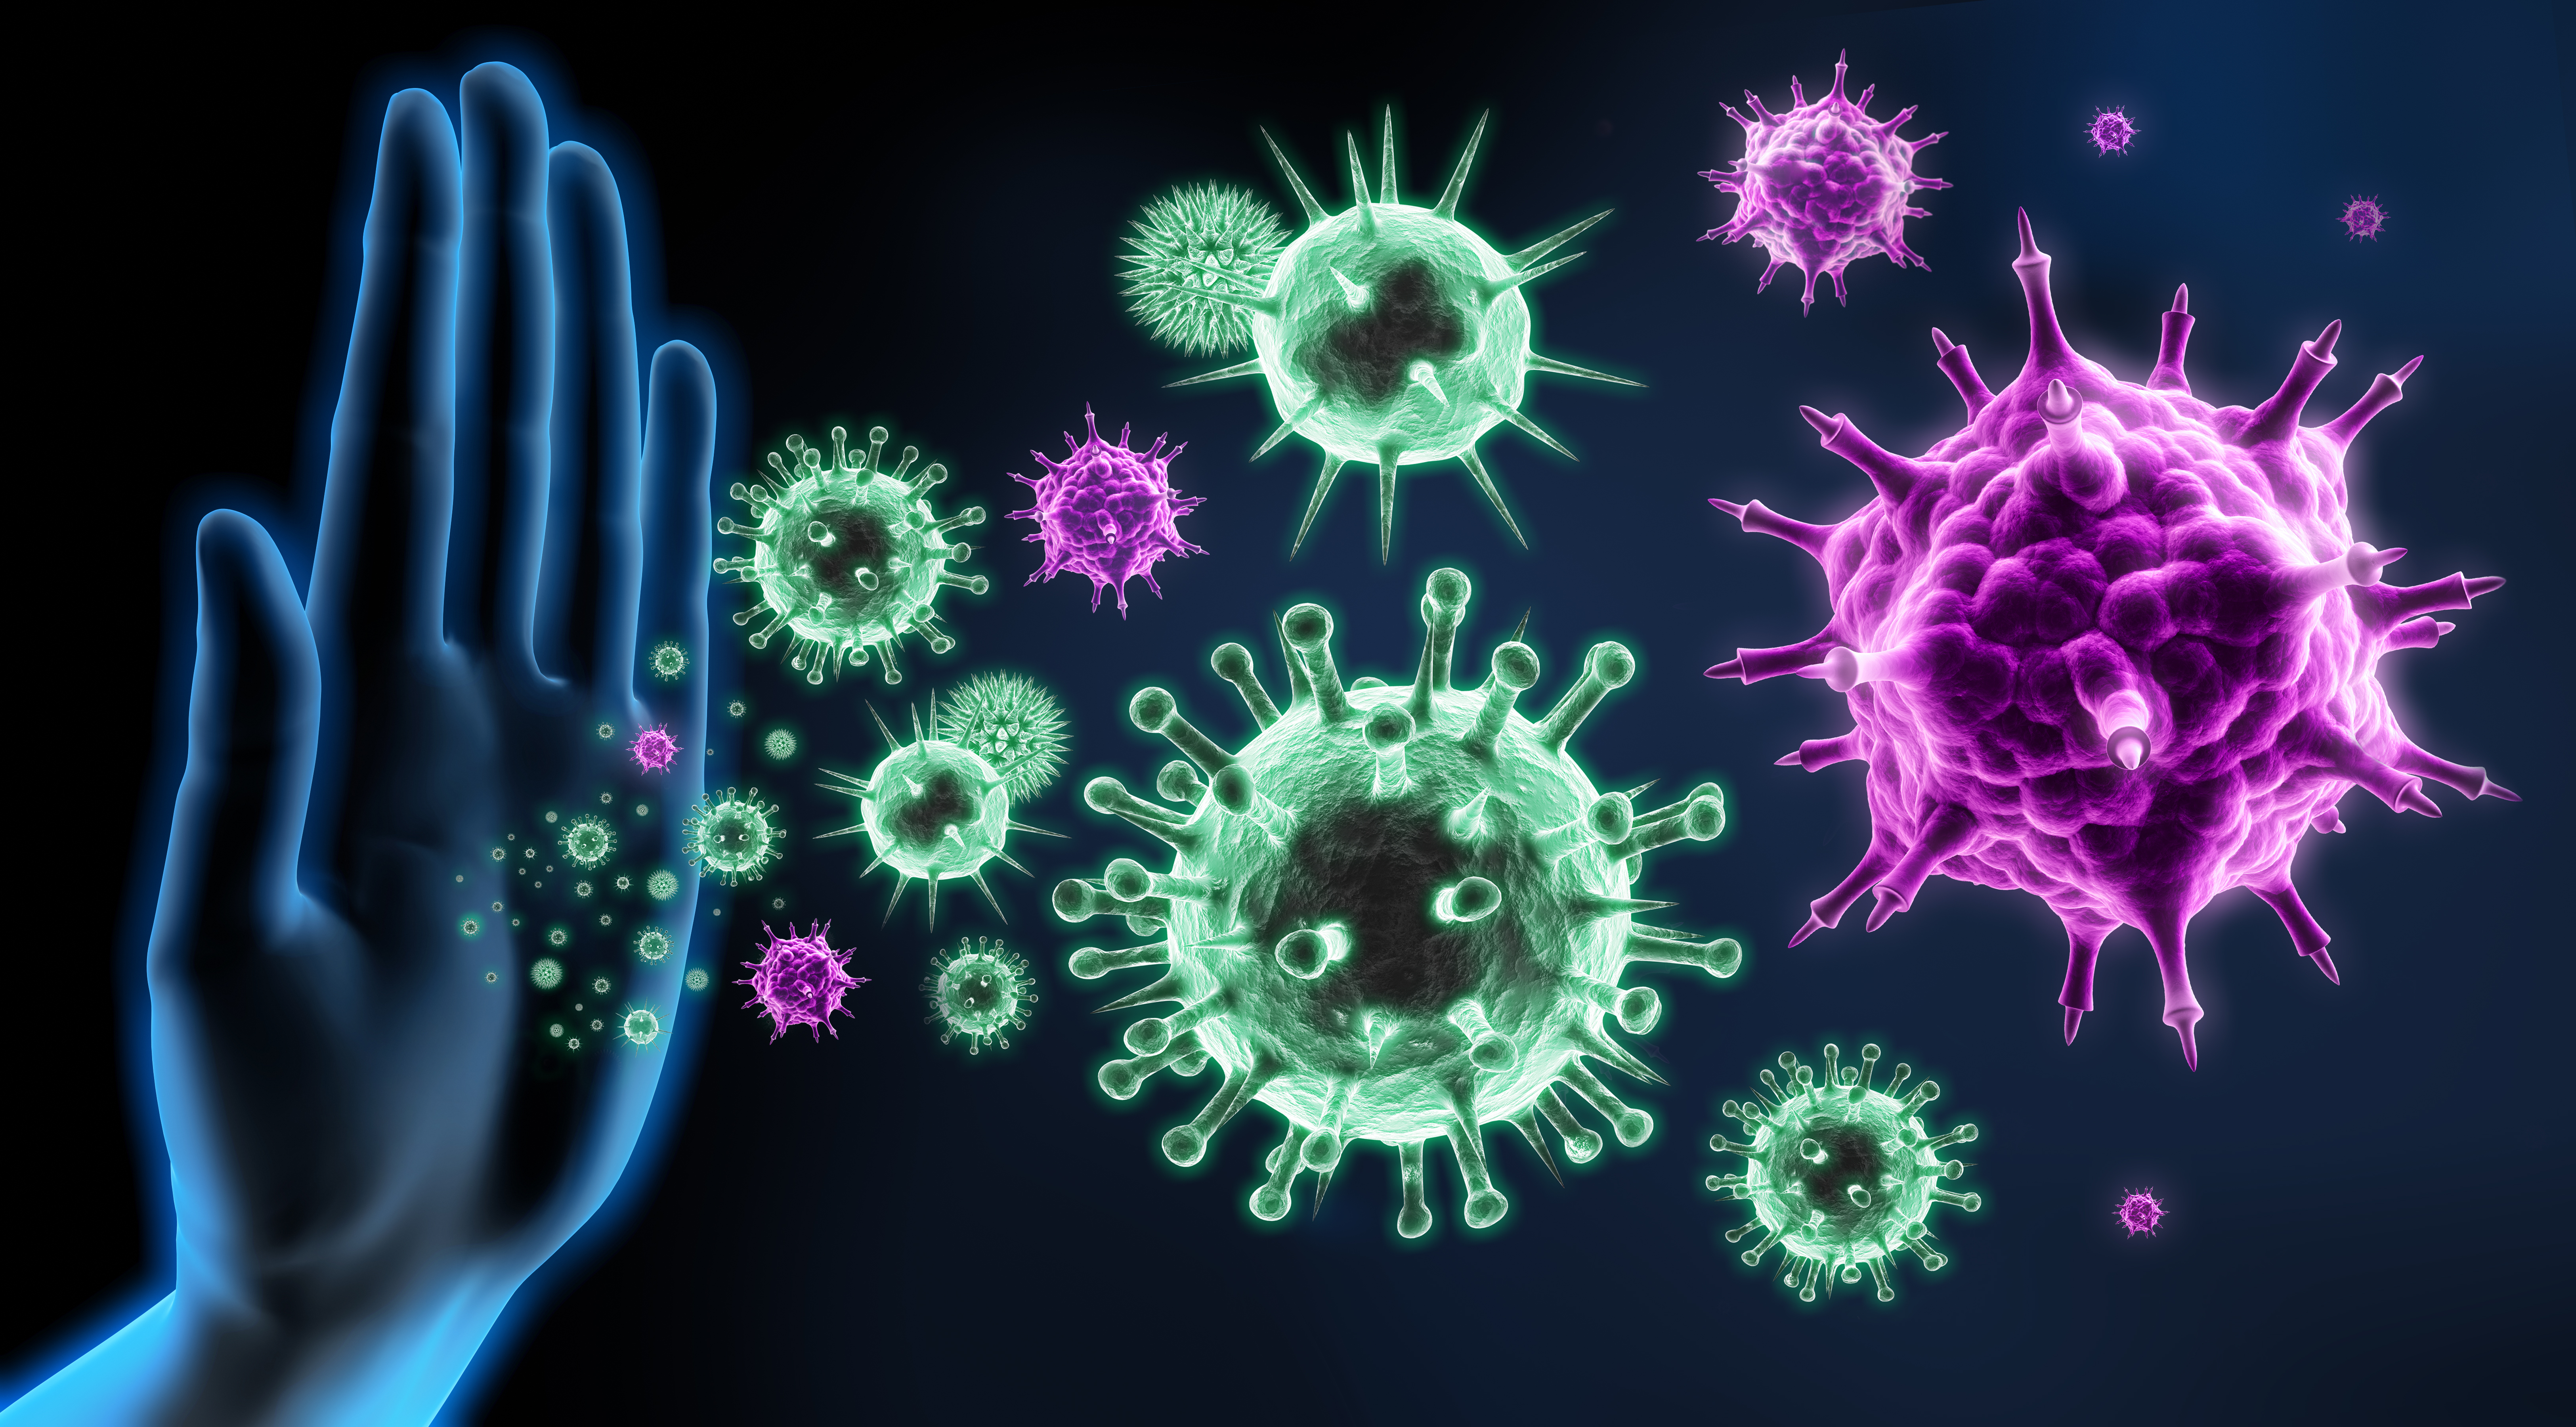 rappresentazione difesa dai virus influenzali